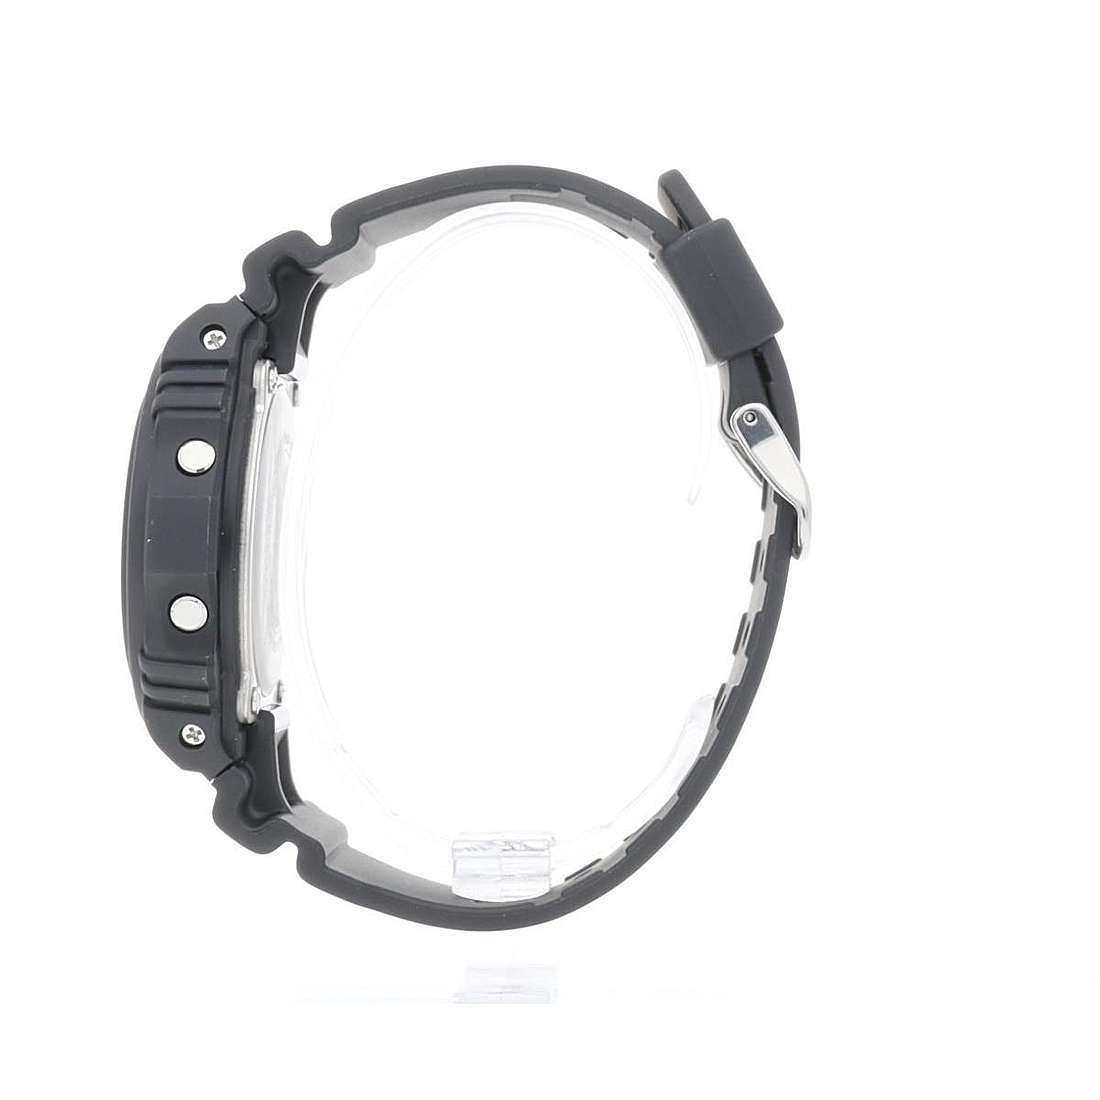 Preise Uhren mann G-Shock DW-5700BBM-1ER